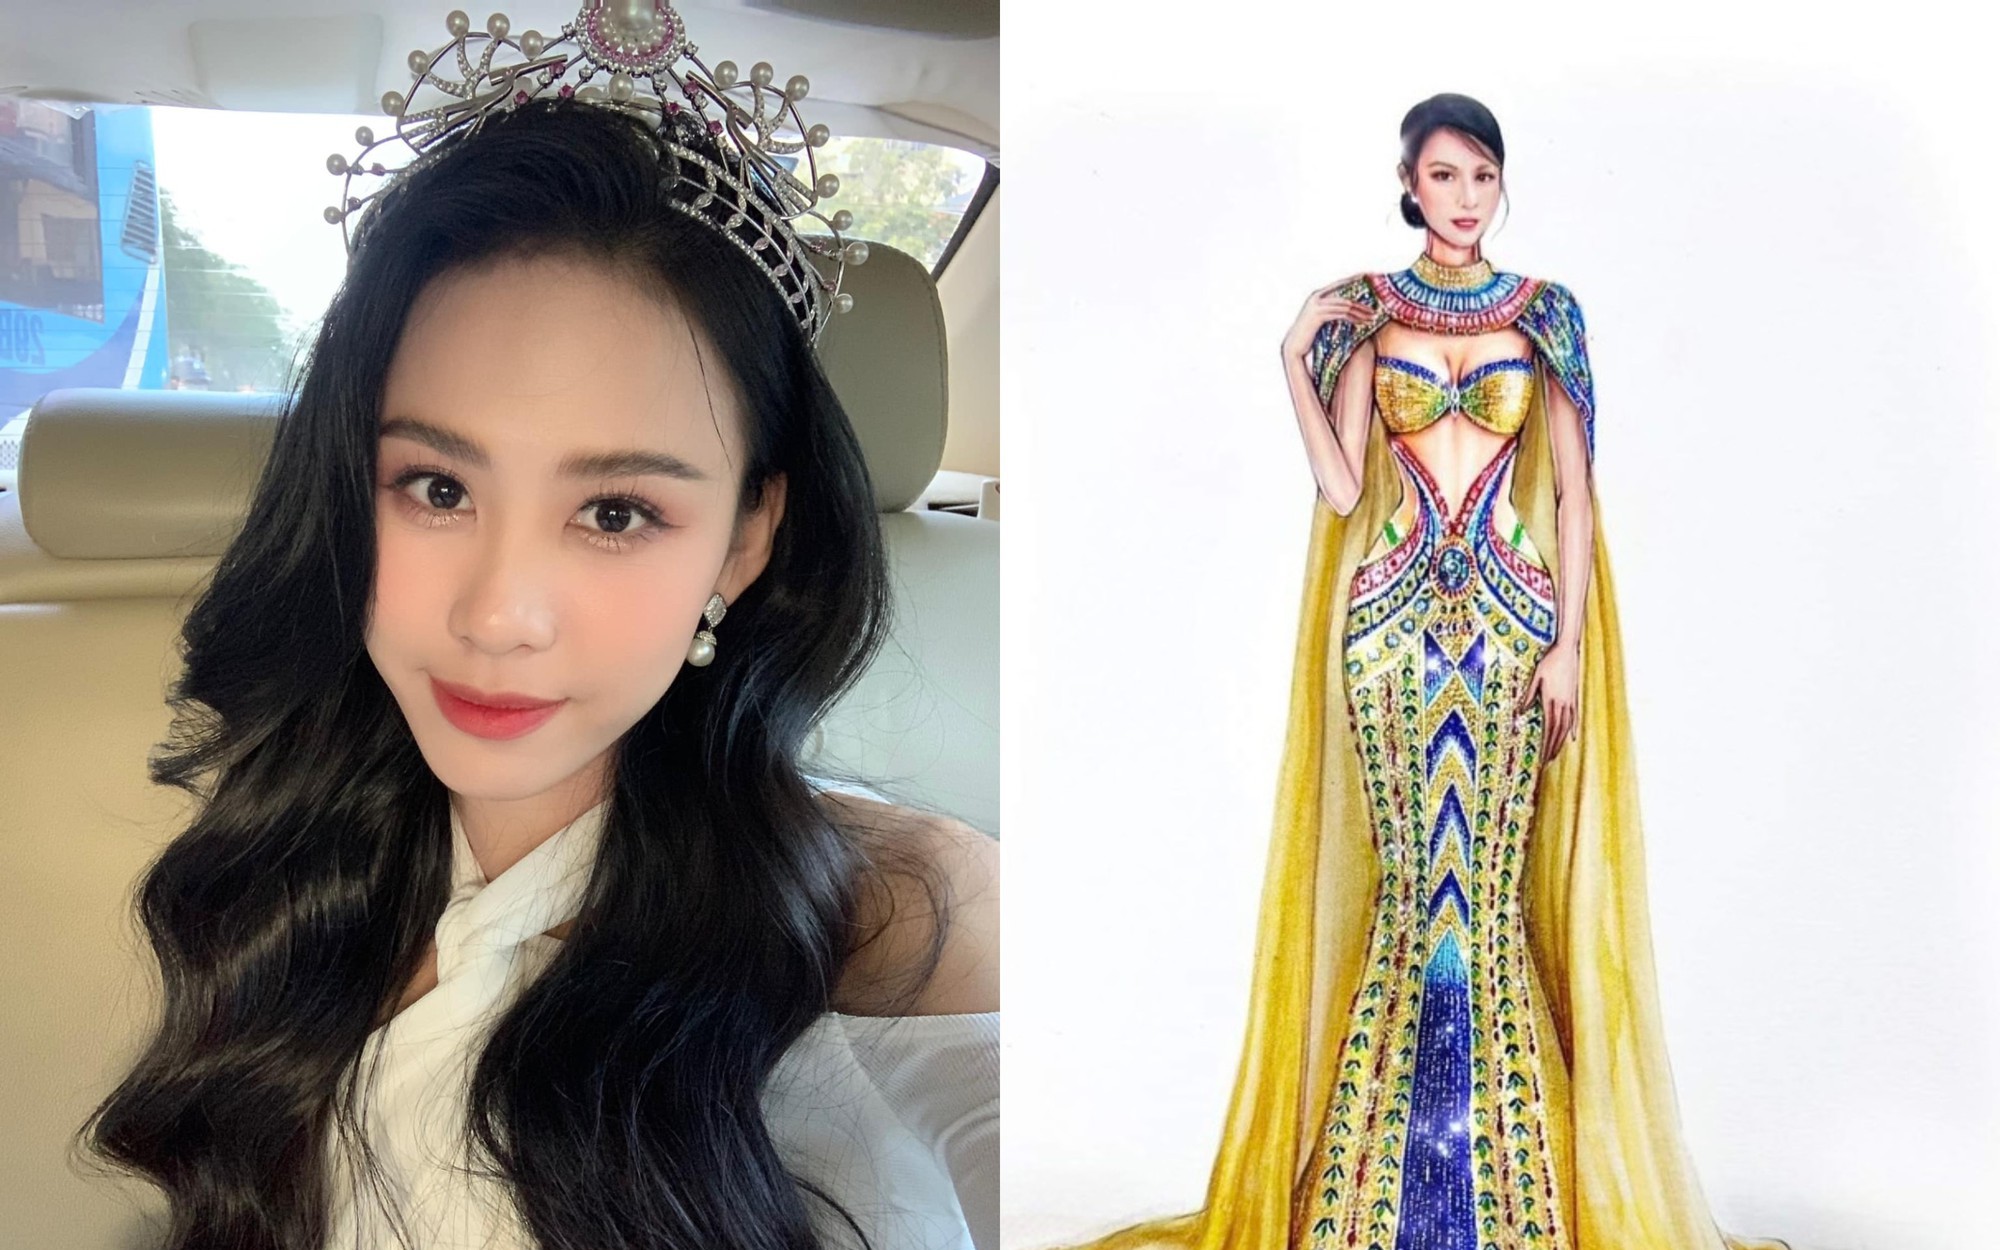 Á hậu Ngọc Hằng chuẩn bị những gì trước ngày lên đường thi Miss Intercontinental 2023 ở Ai Cập?